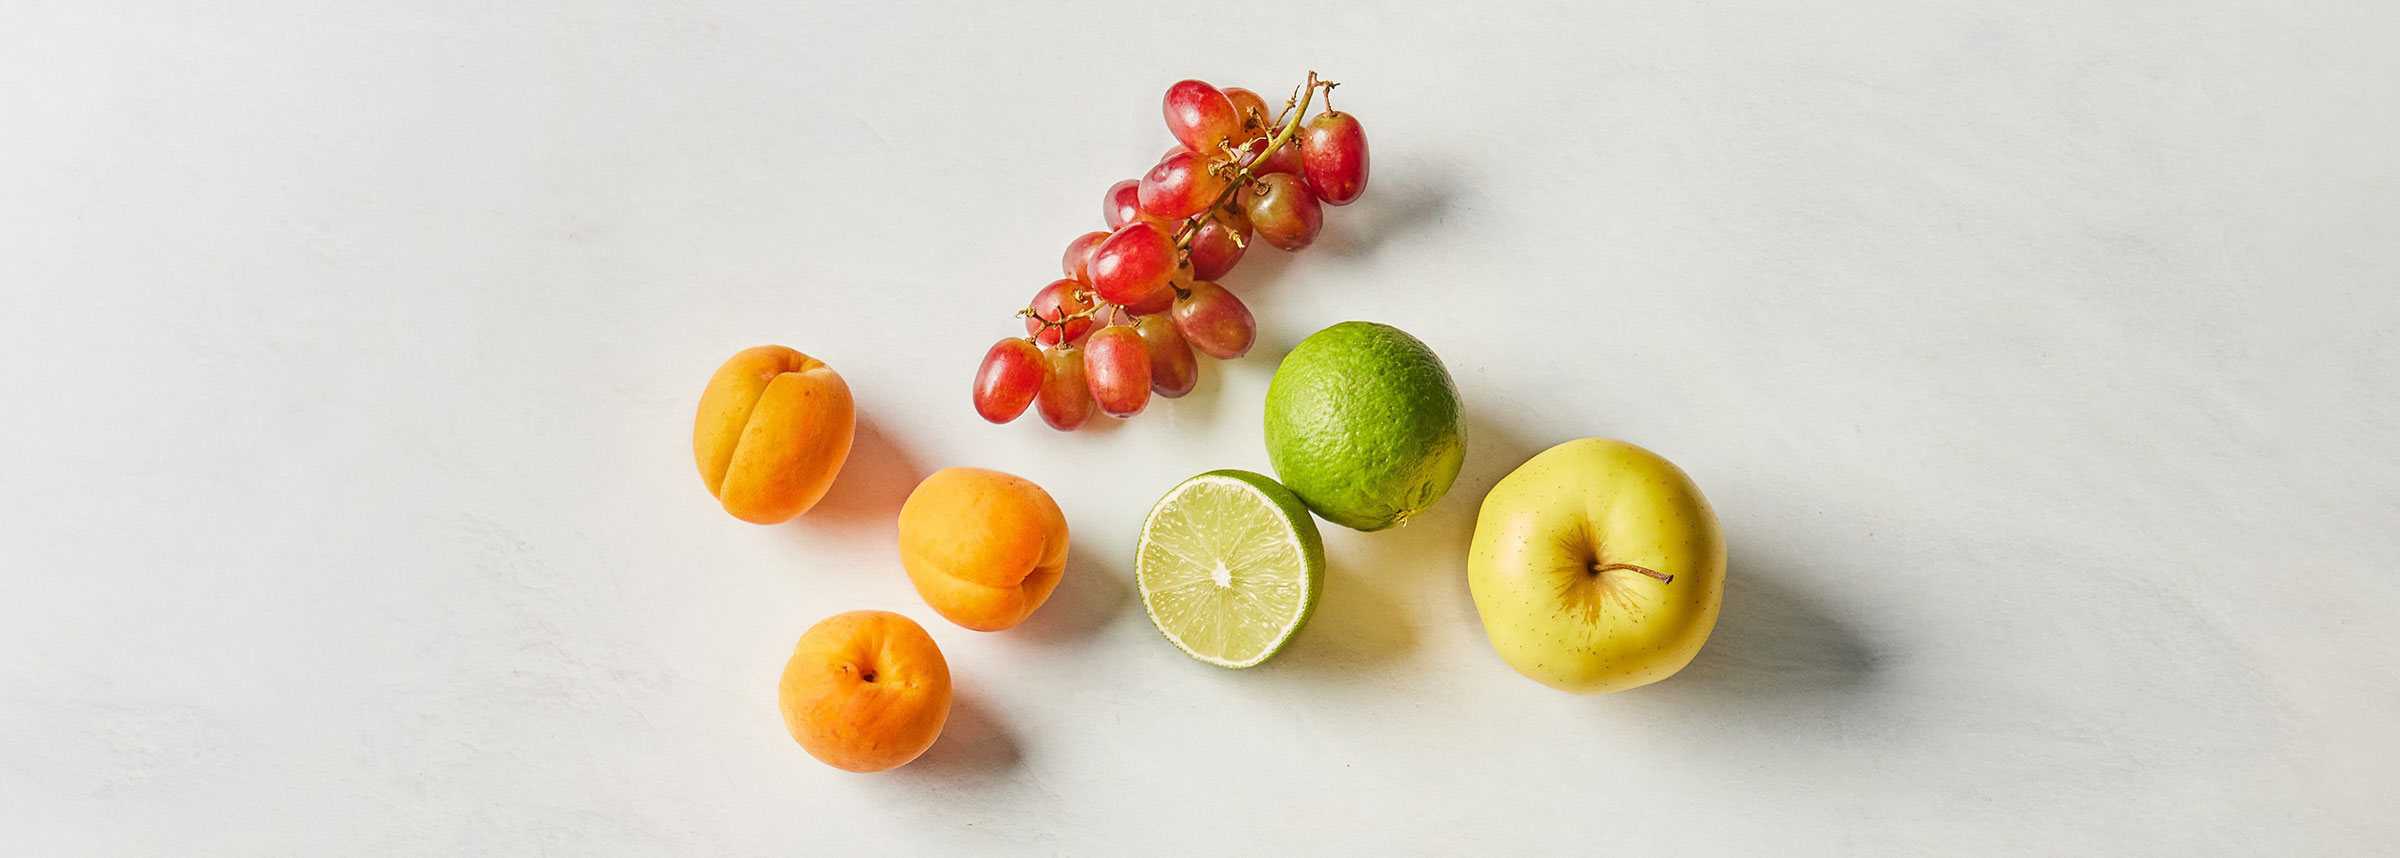 aprikos, druer, lime og gult eple